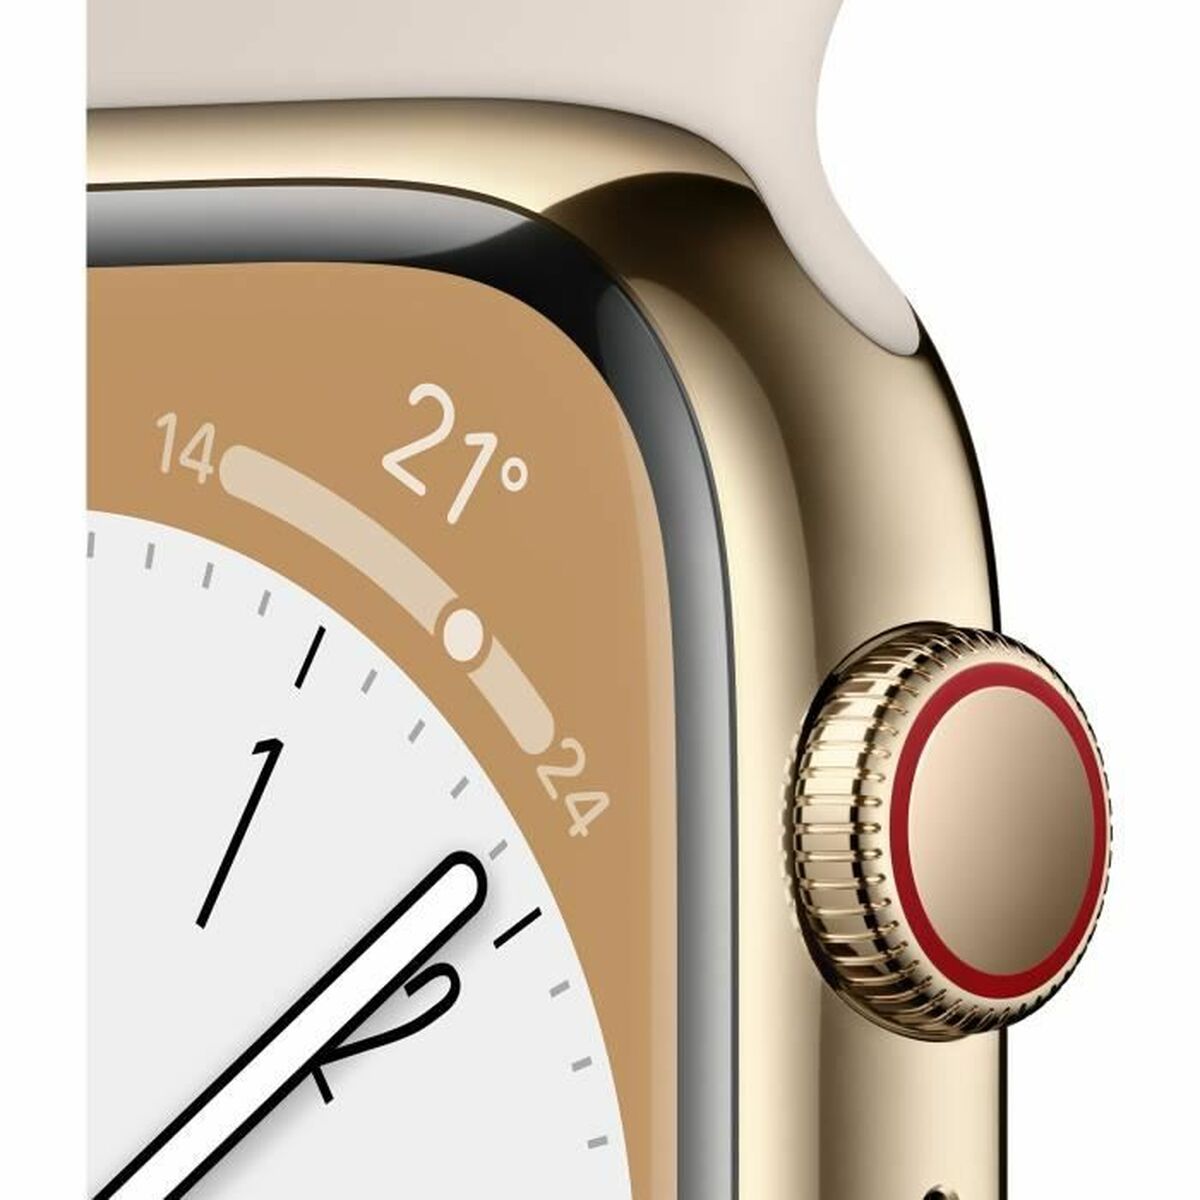 Reloj Inteligente Apple Watch Serie 8 Watchos 9 32gb 4g